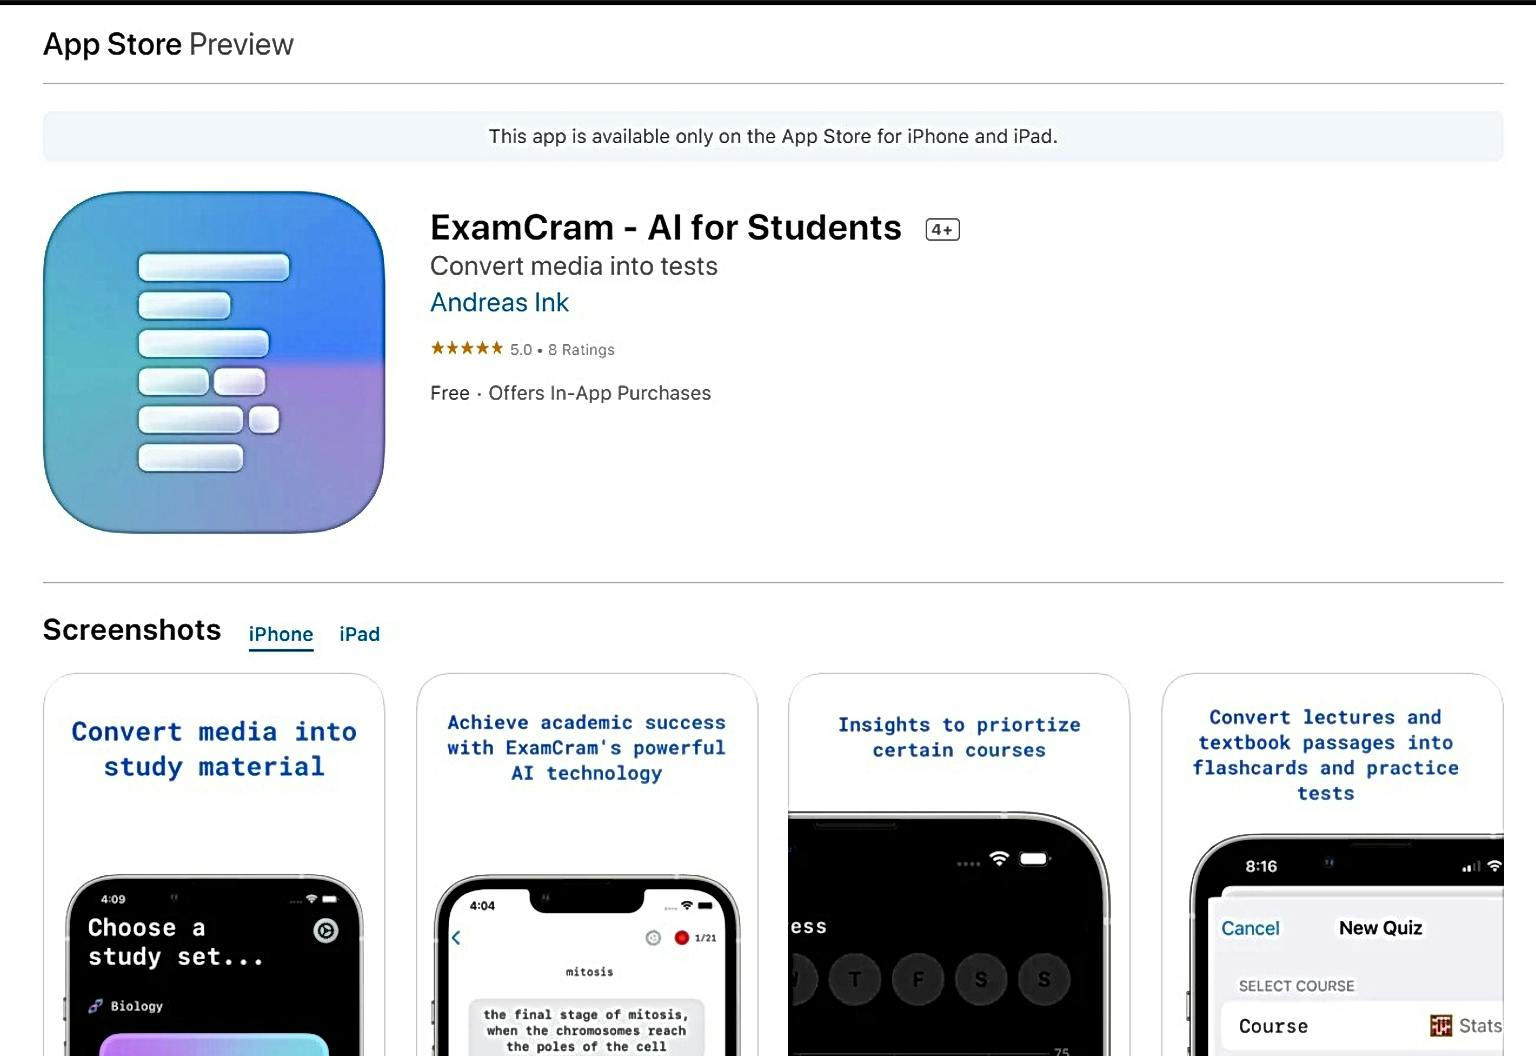 ExamCram featured